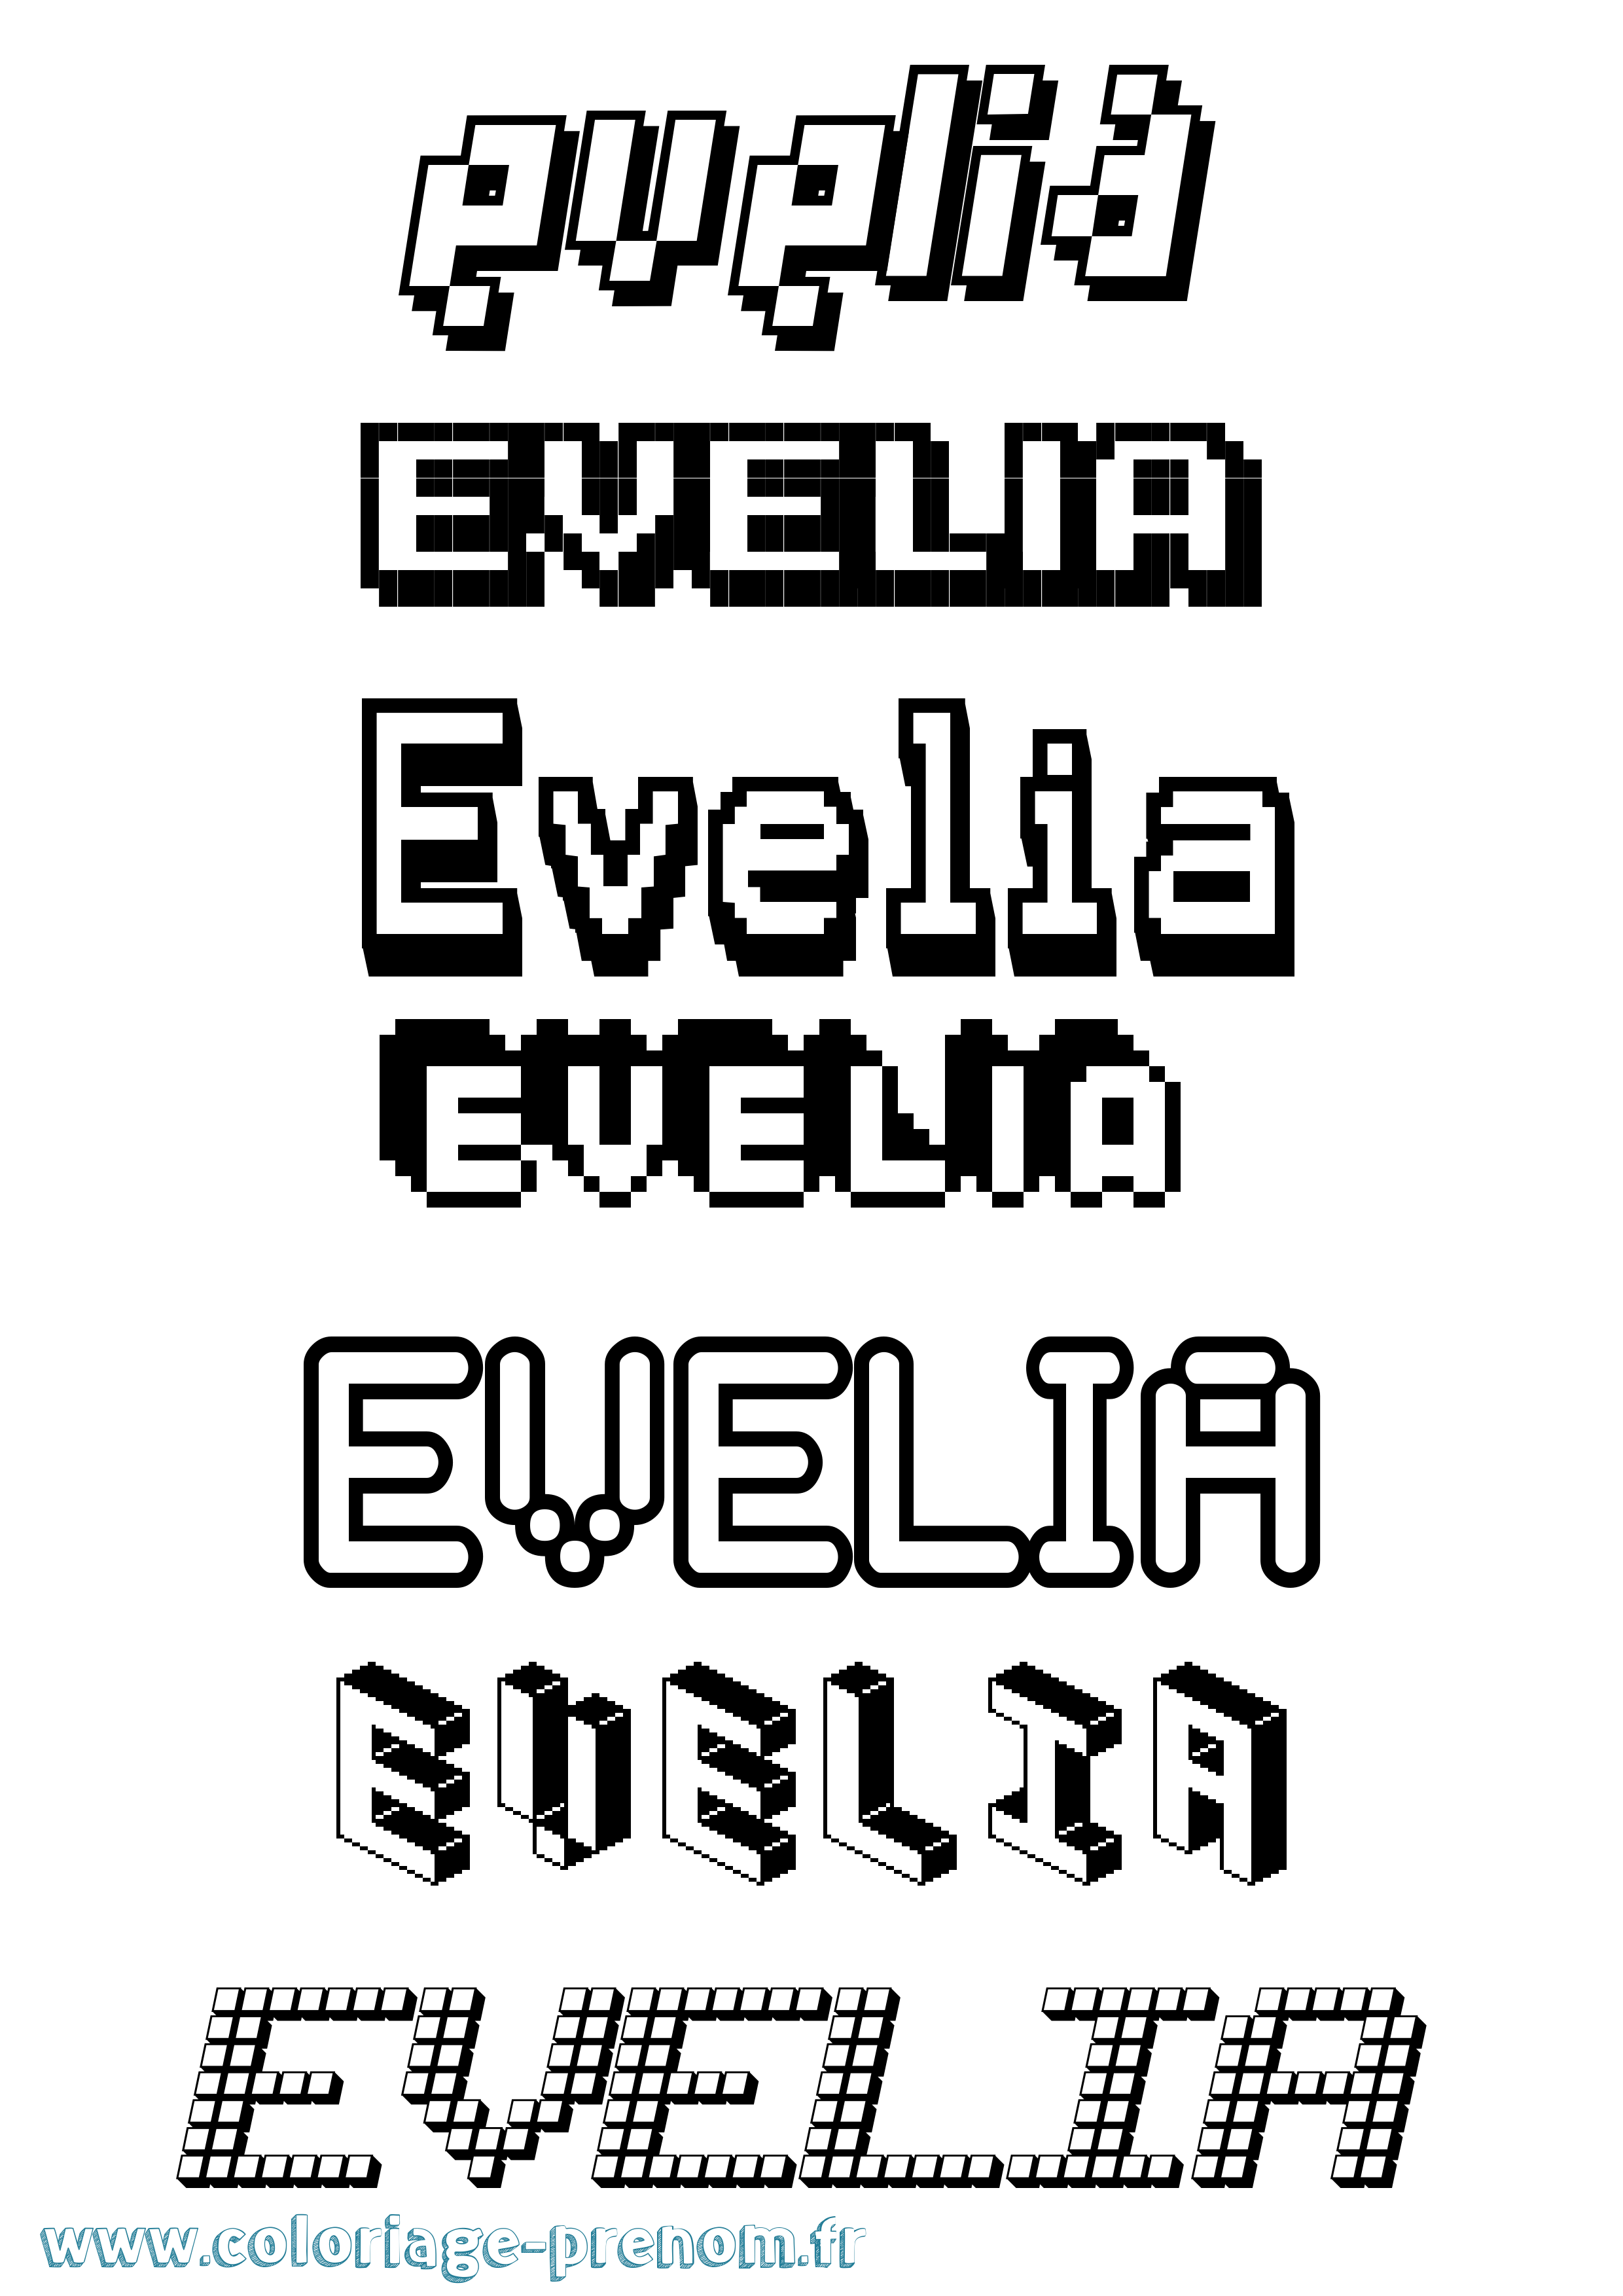 Coloriage prénom Evelia Pixel